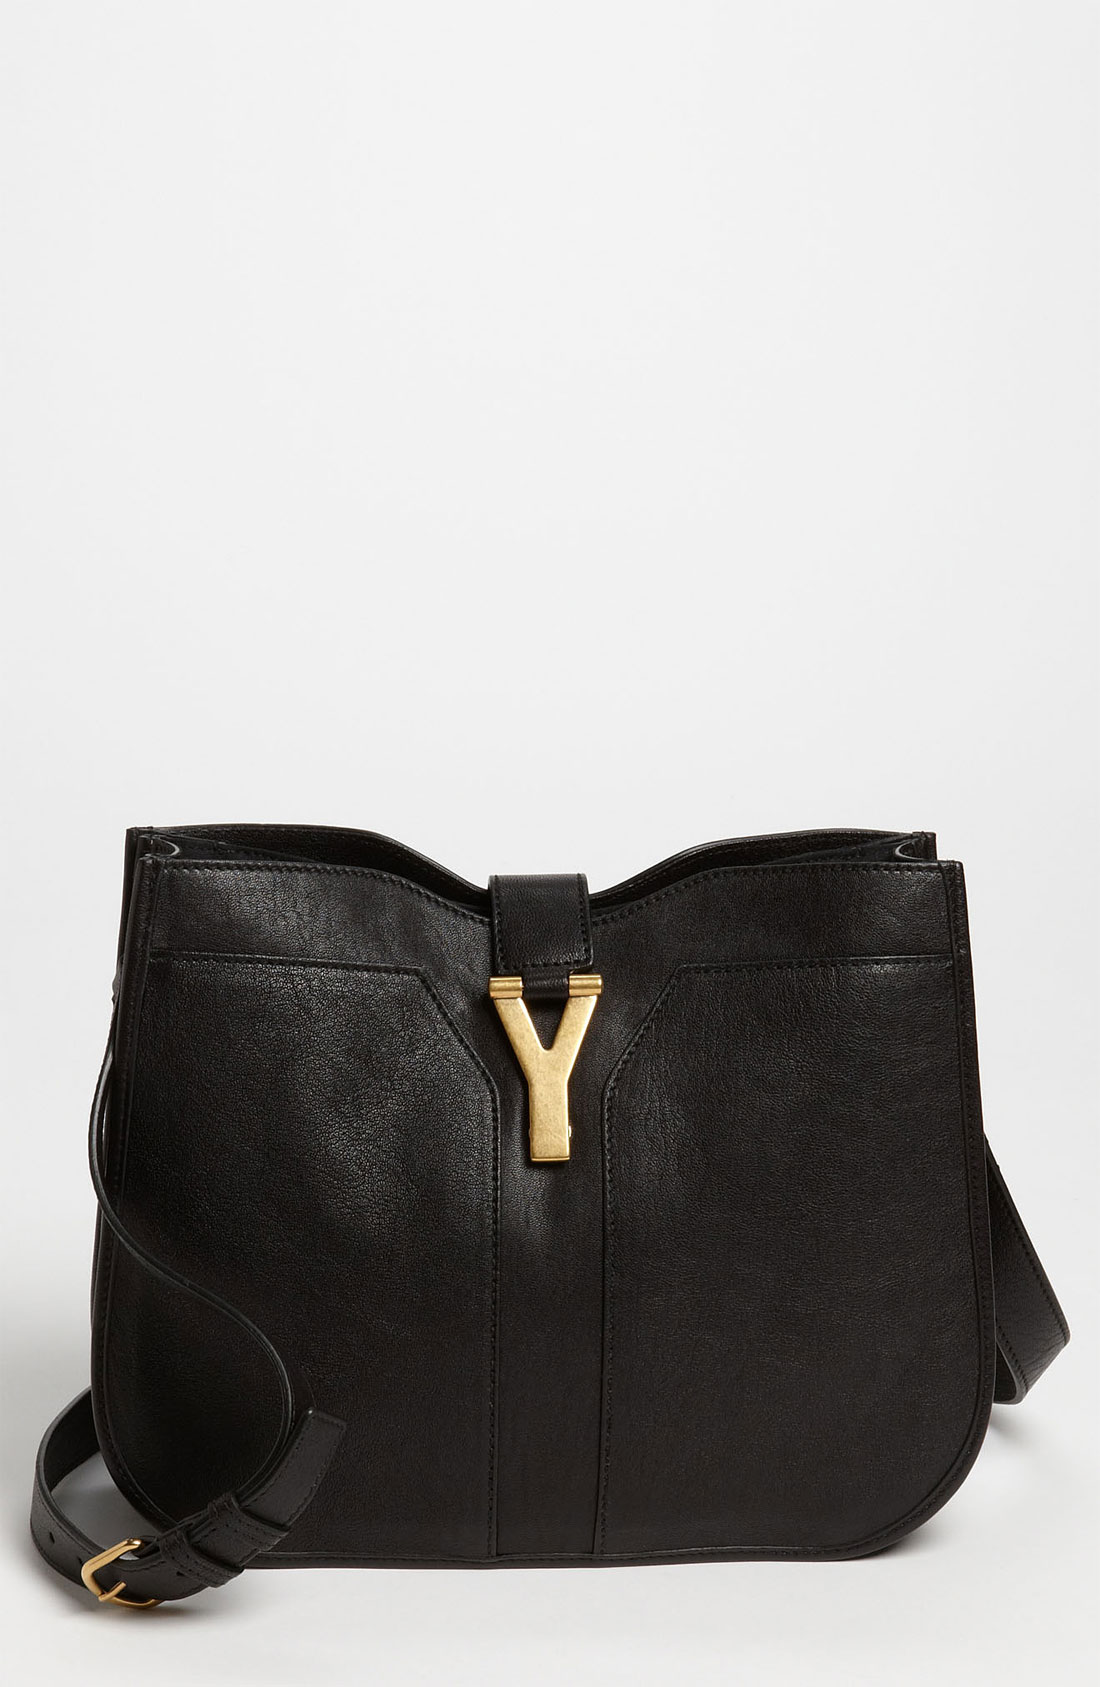 Ysl Medium Black Chyc Shoulder Bag \u2013 Shoulder Travel Bag